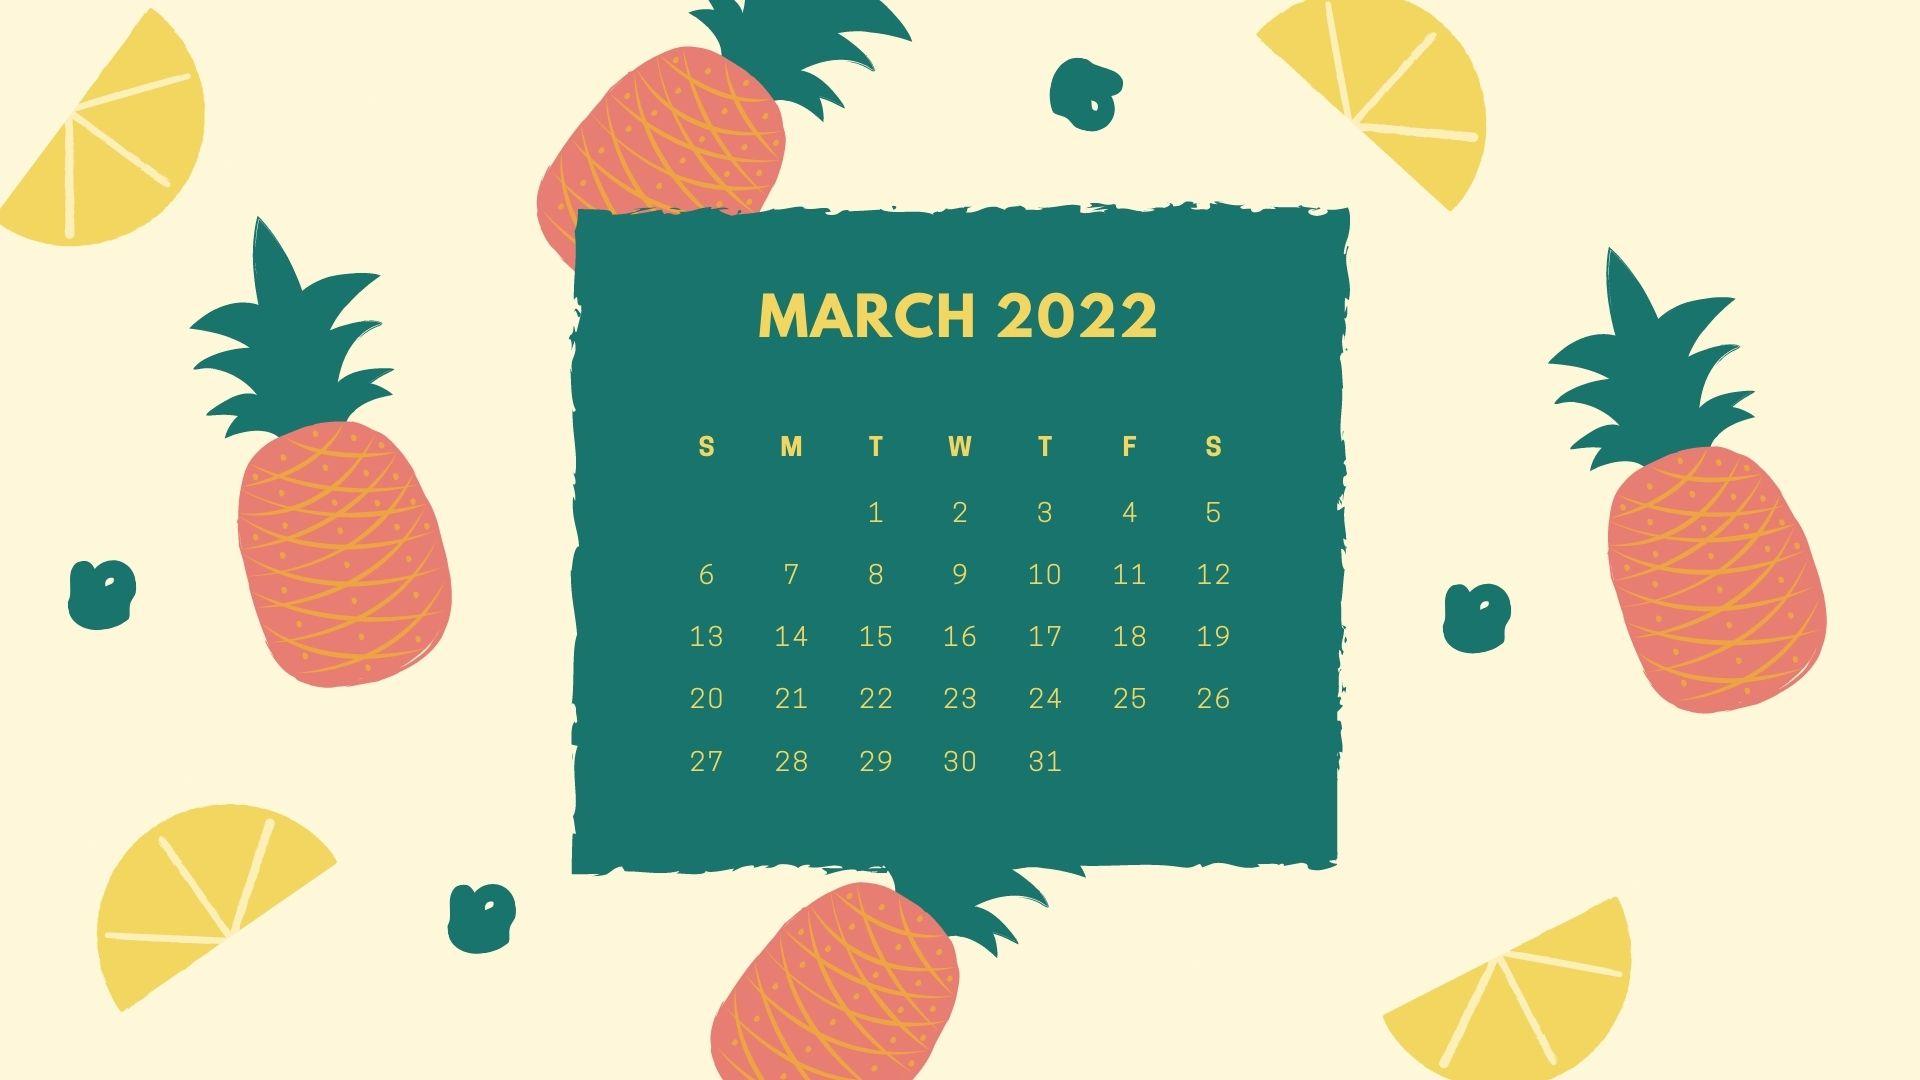 March 2022 Calendar Wallpaper March 2022 Calendar Wallpapers - Top Free March 2022 Calendar Backgrounds -  Wallpaperaccess